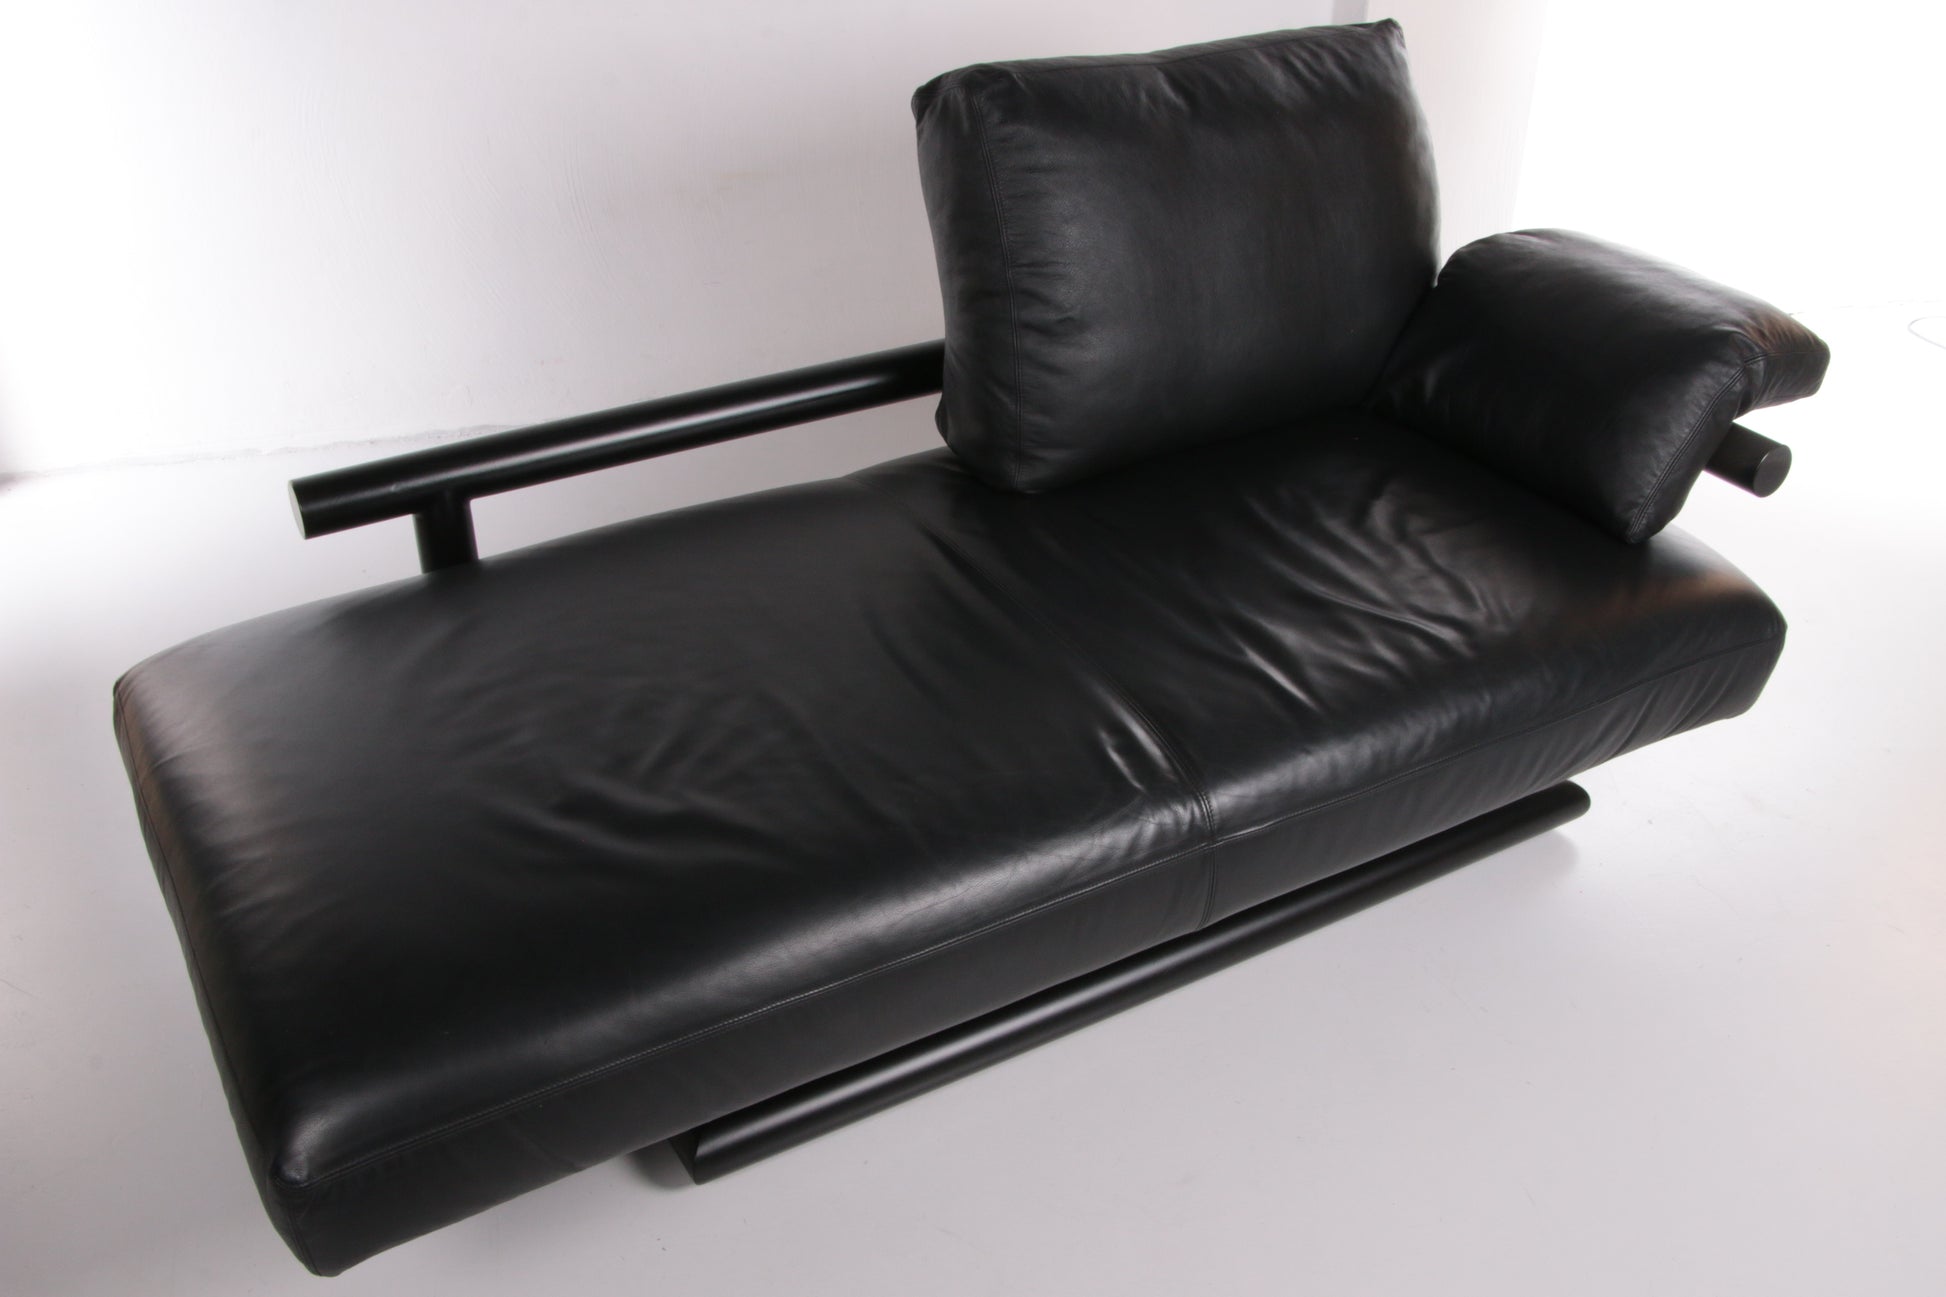 Design chaise longue van Knoll zwart leer jaren80